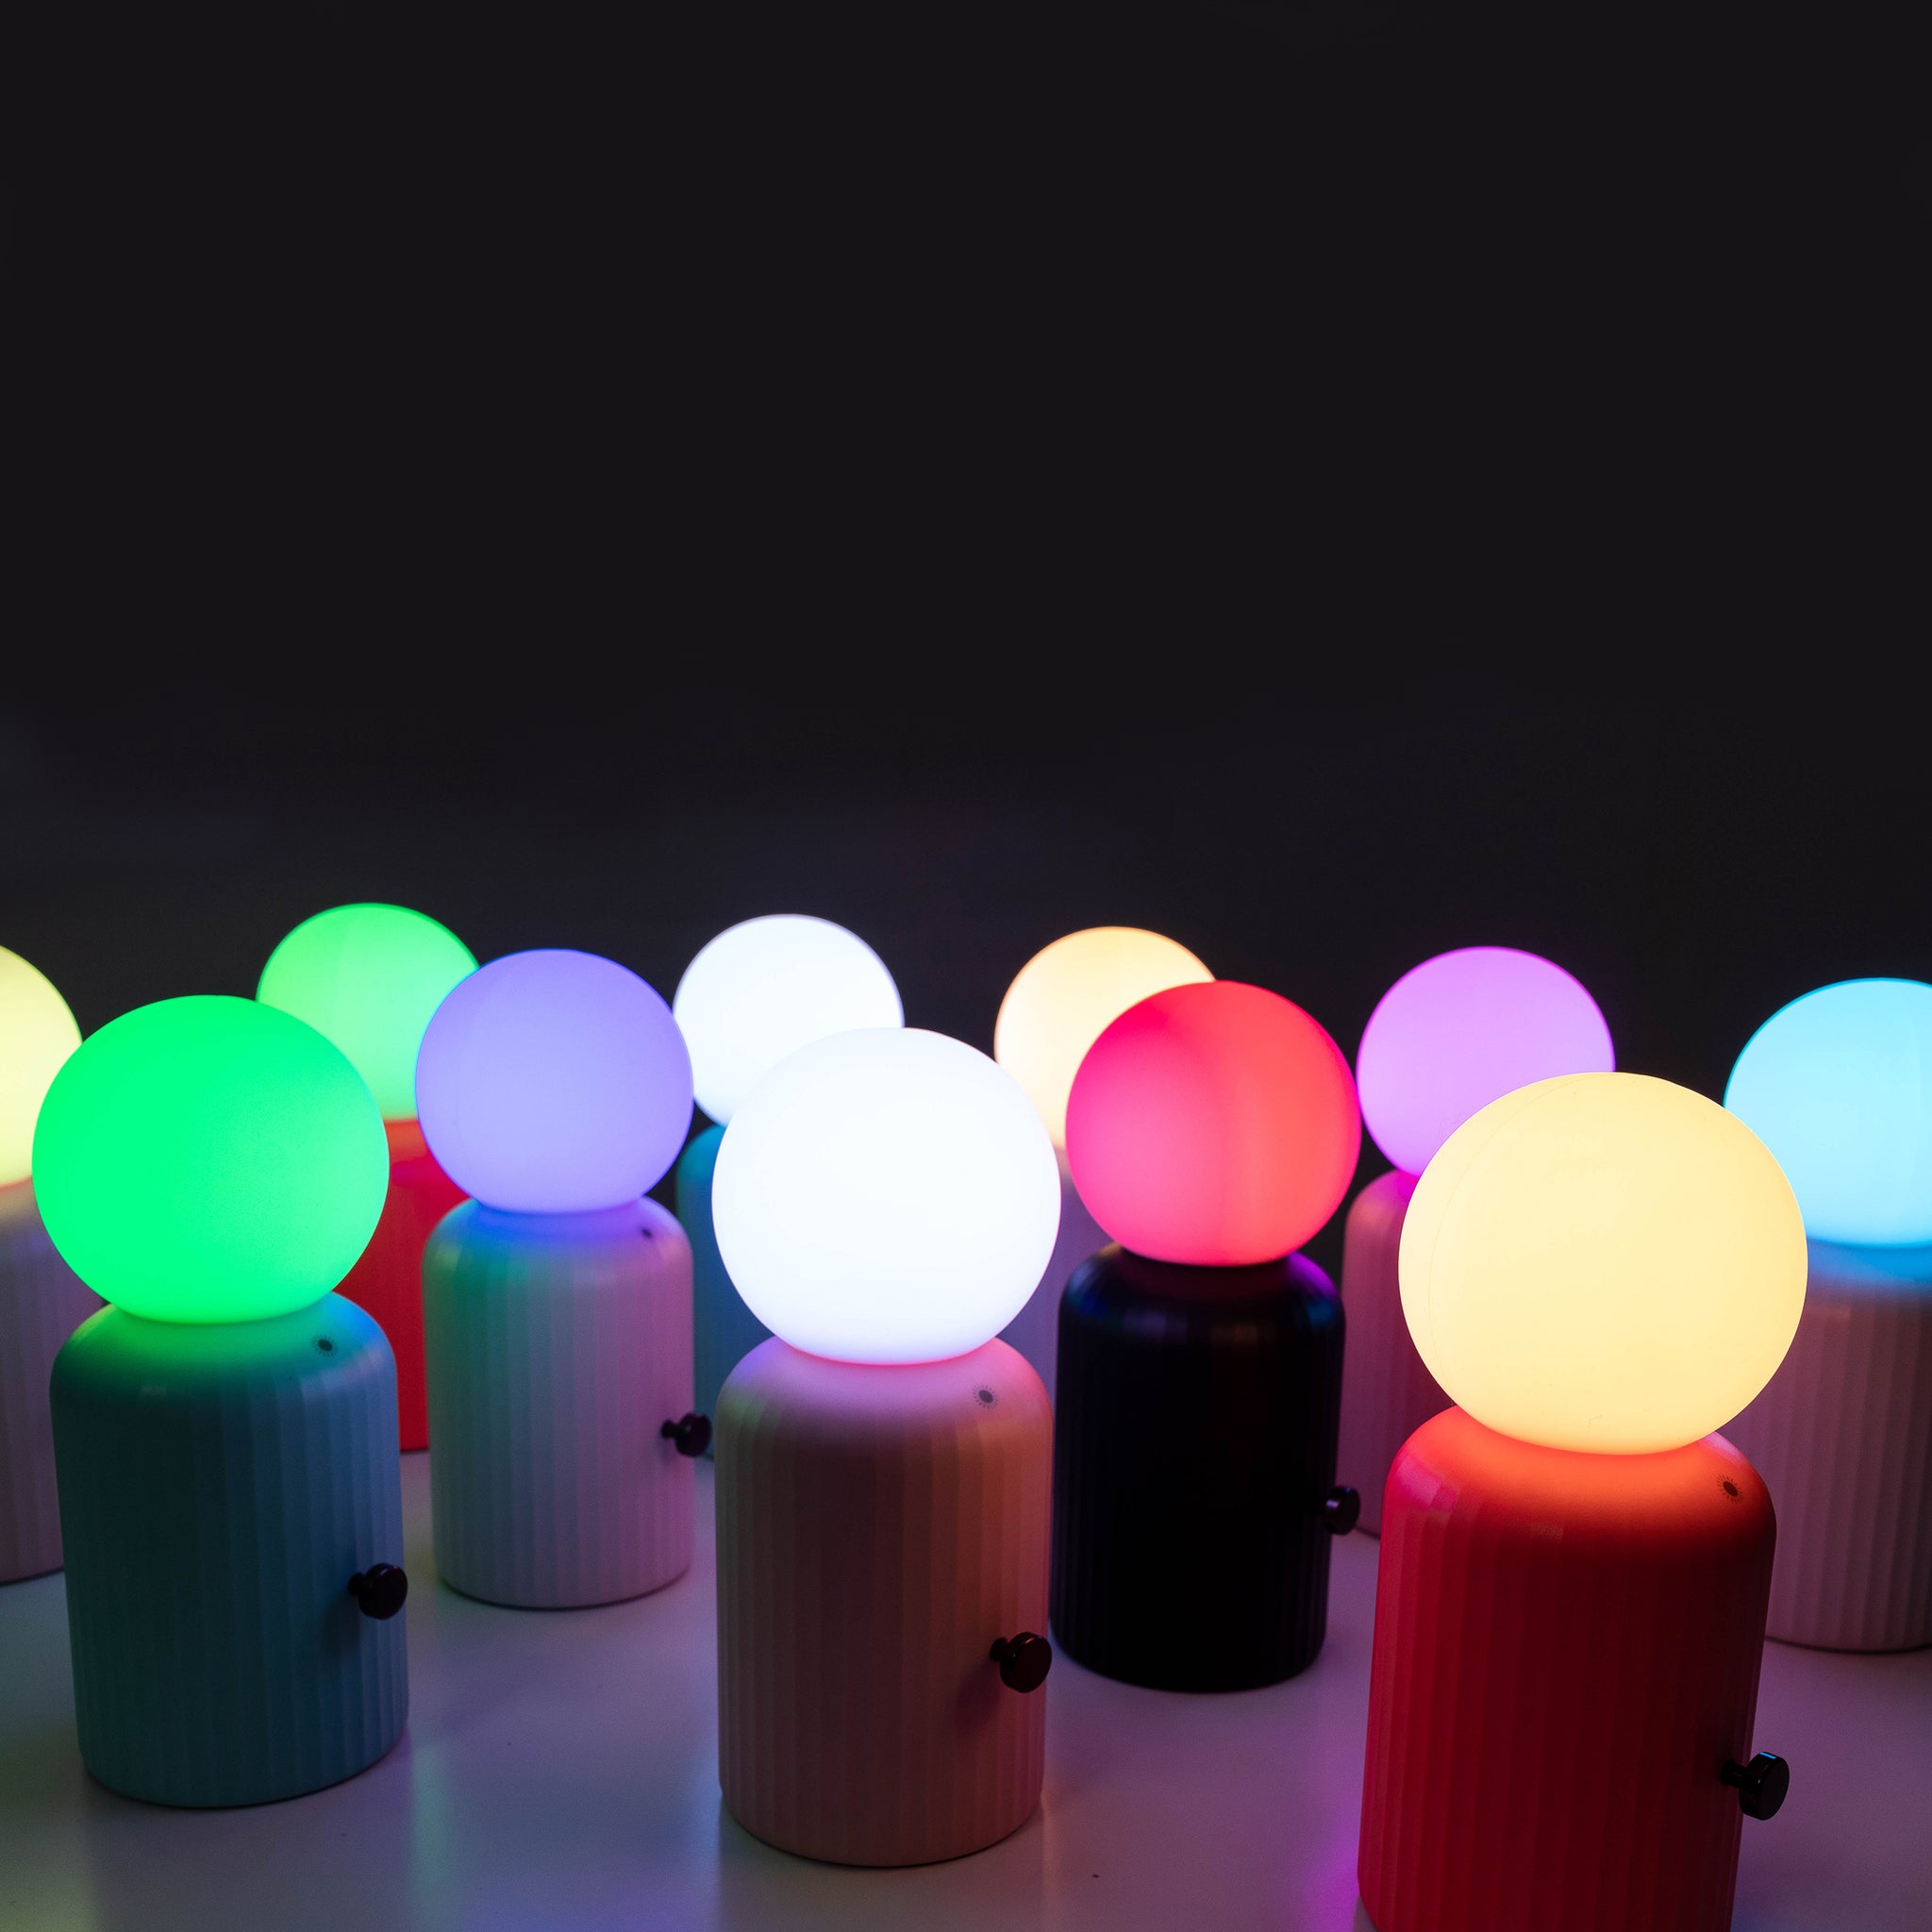 Skittle Oplaadbare Lamp Coral│Lund London│Draadloos│foto groep diverse kleuren met licht aan en donkere achtergrond